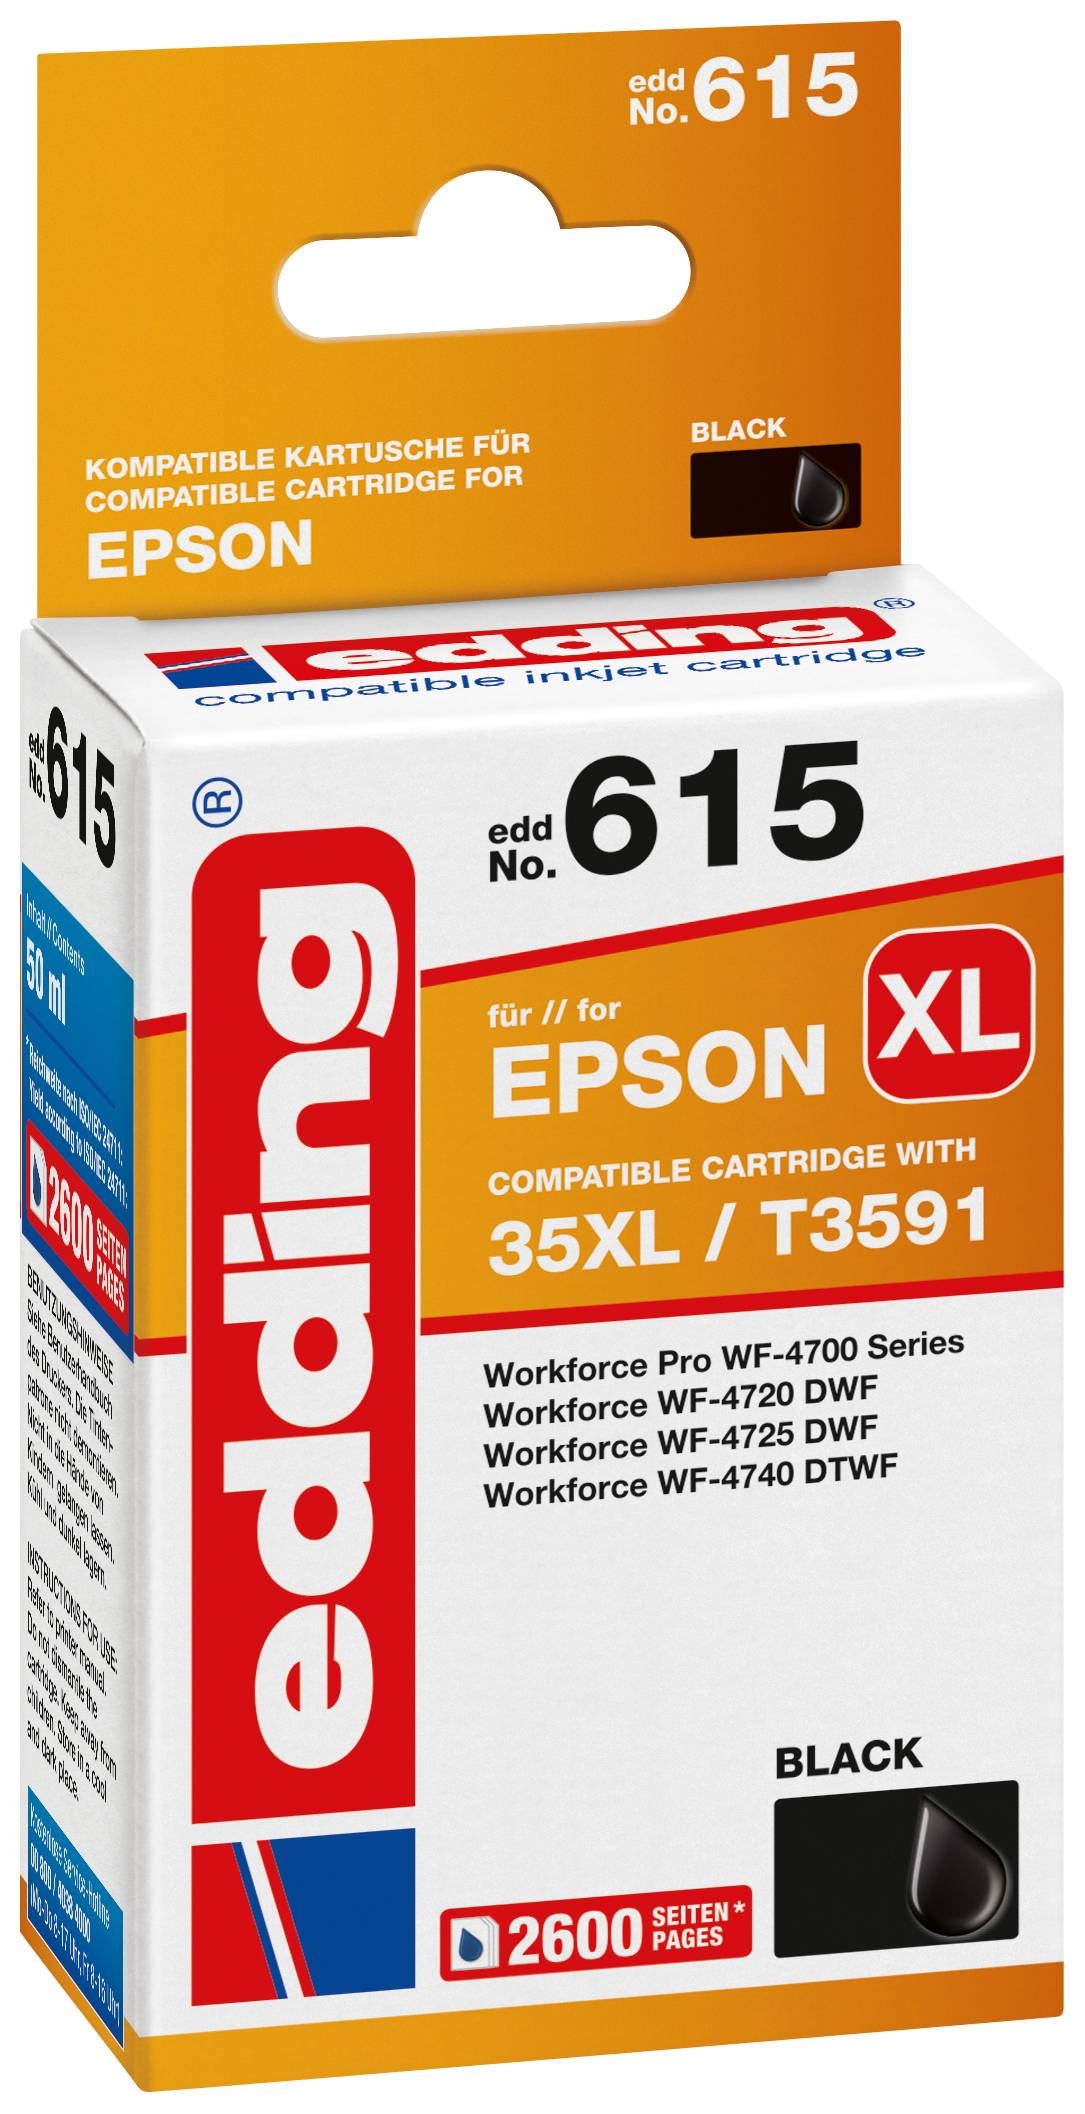 EDDING Tintenpatrone ersetzt Epson 35XL / T3591 Kompatibel einzeln Schwarz EDD-615 18-615